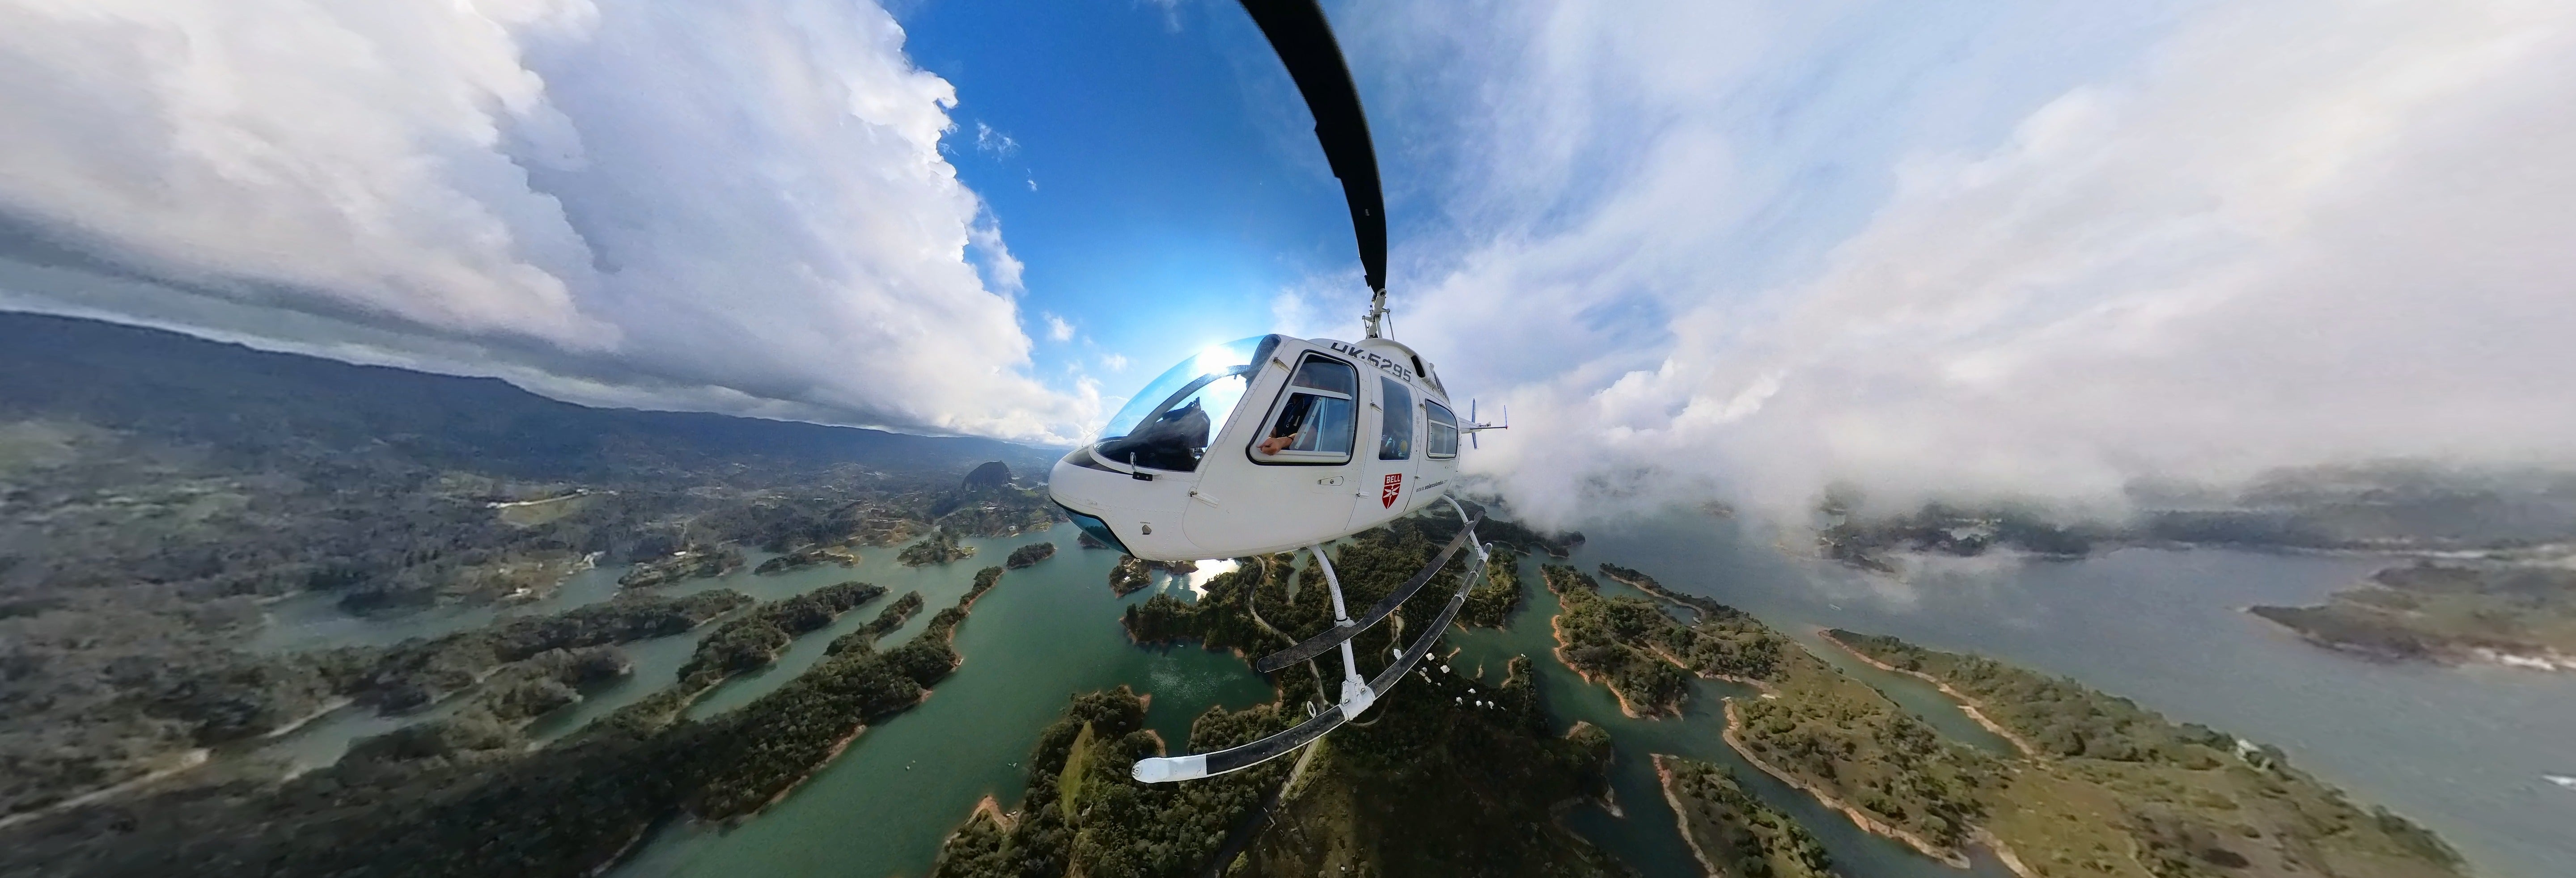 Excursão privada de helicóptero saindo de Medellín